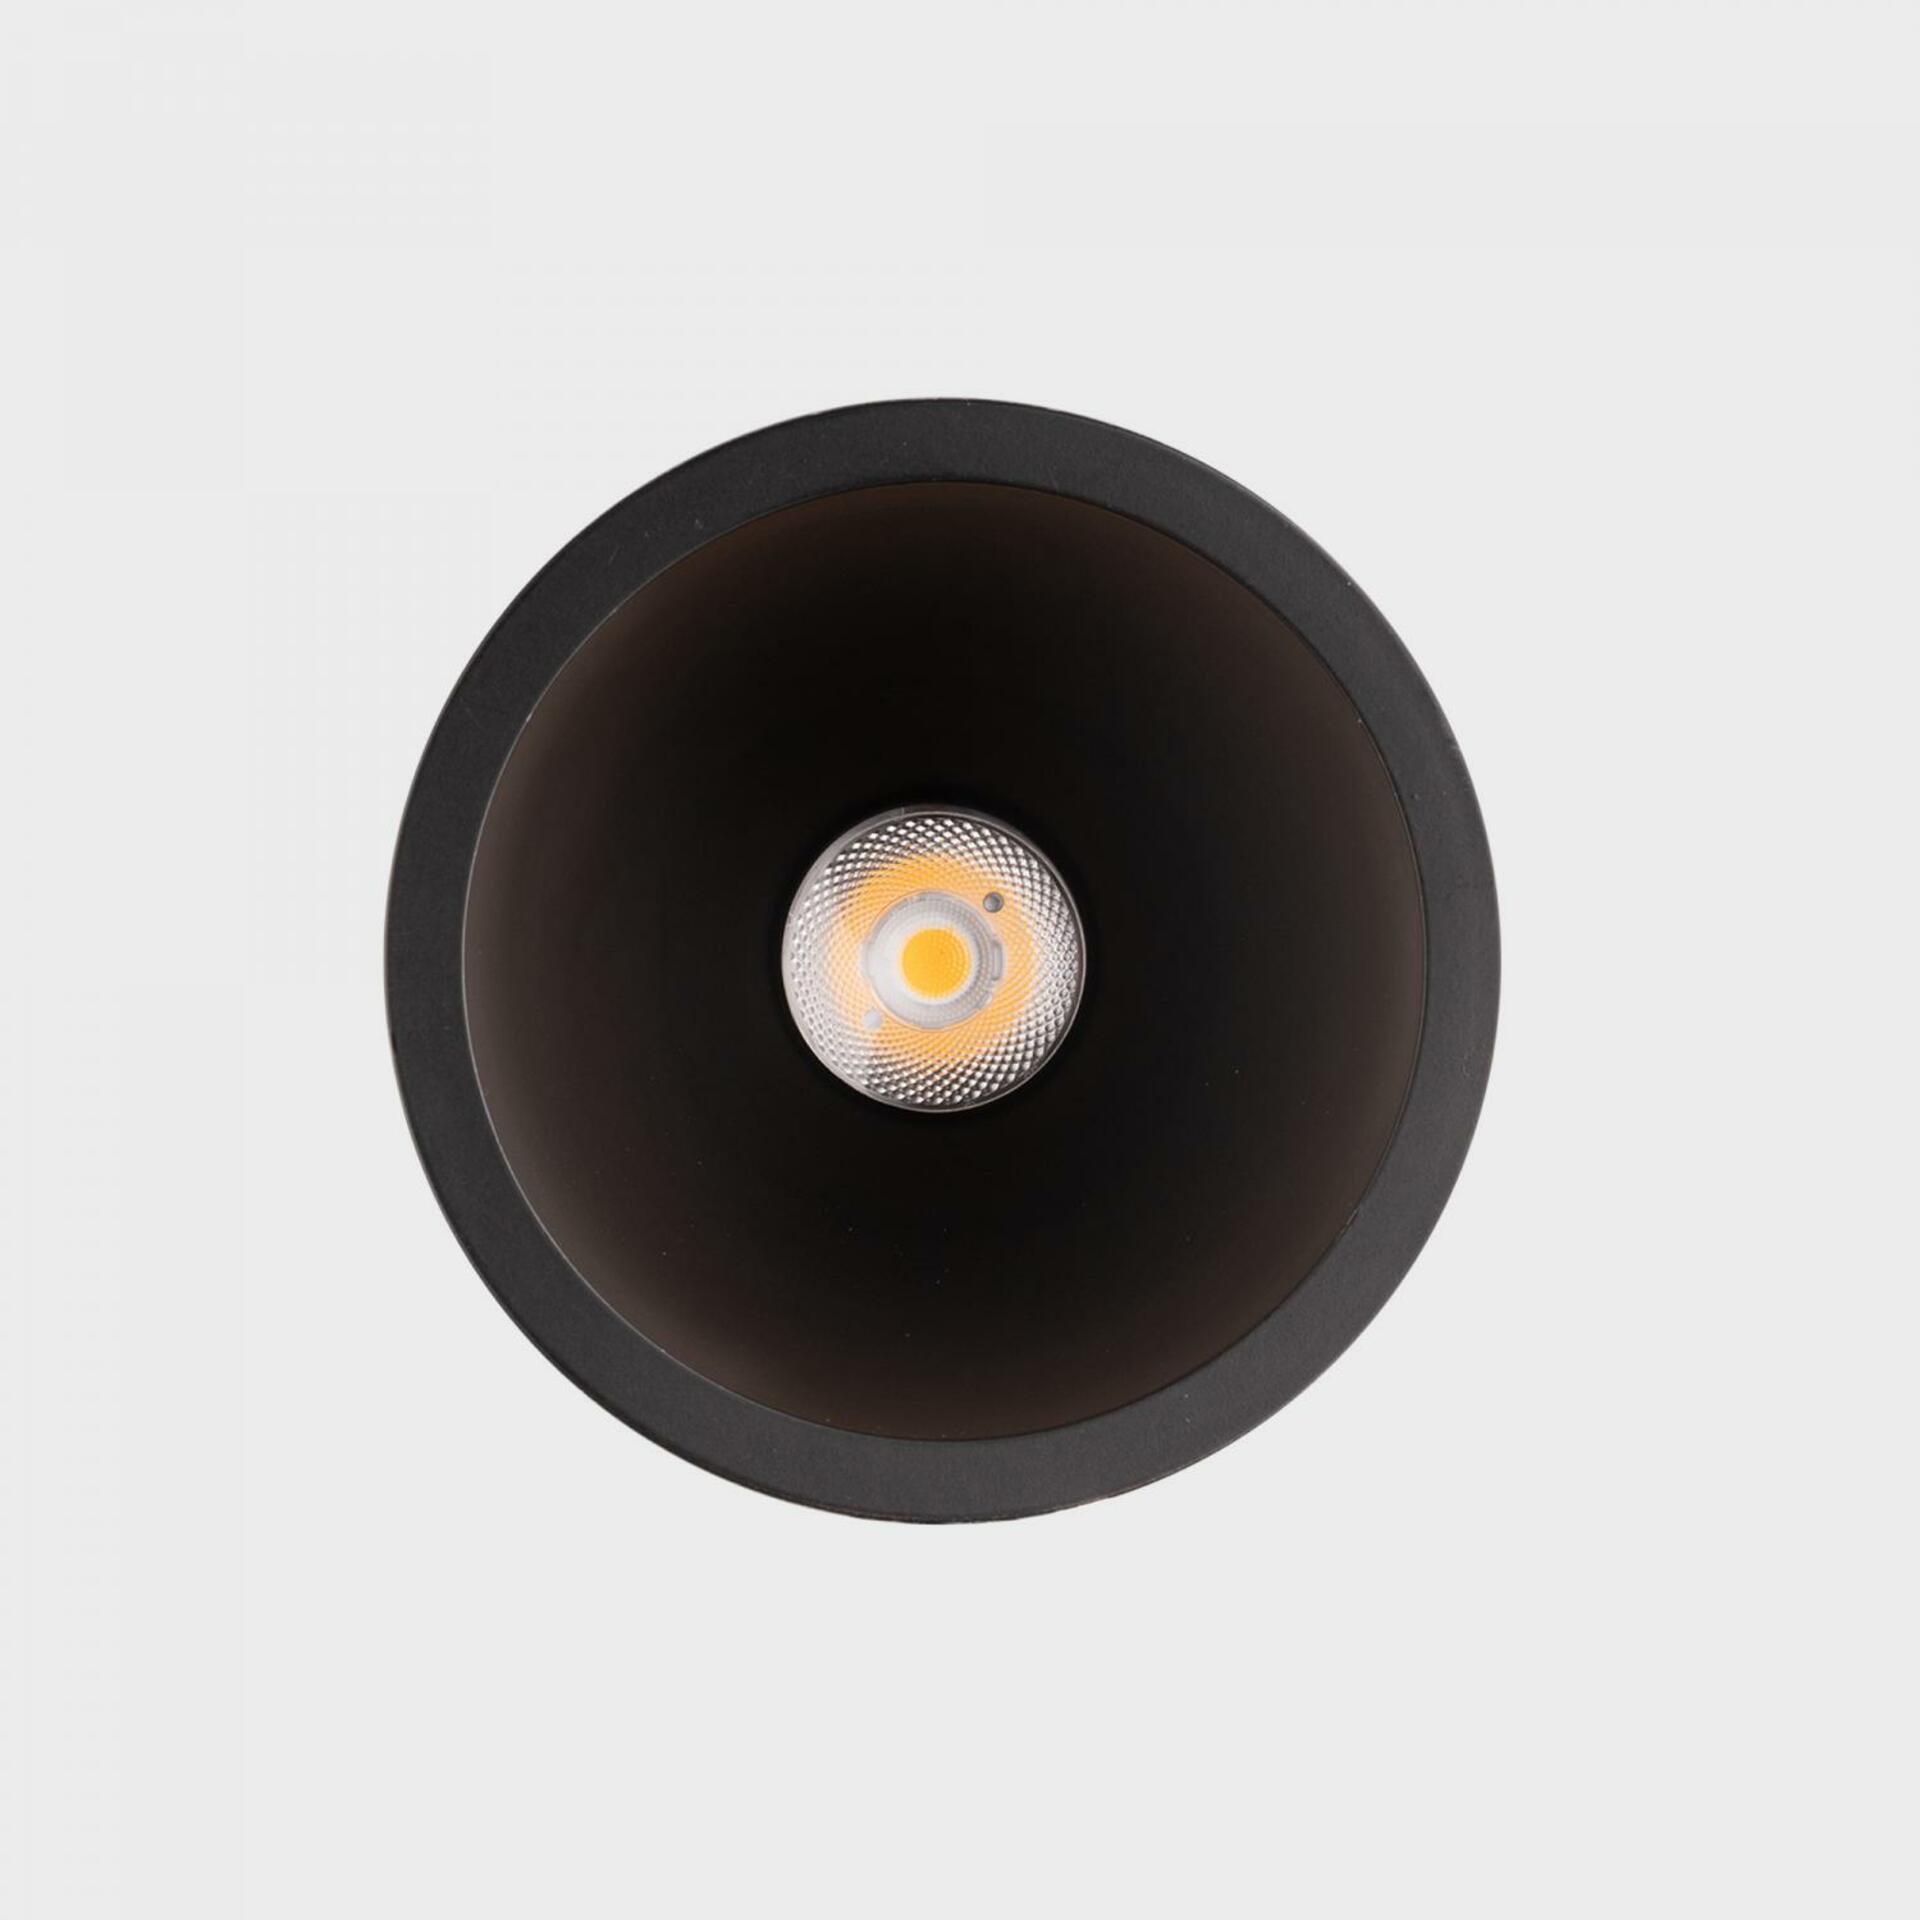 KOHL LIGHTING KOHL-Lighting NOON zapuštěné svítidlo s rámečkem pr.93 mm černá 38° 10 W  CRI 80 4000K DALI